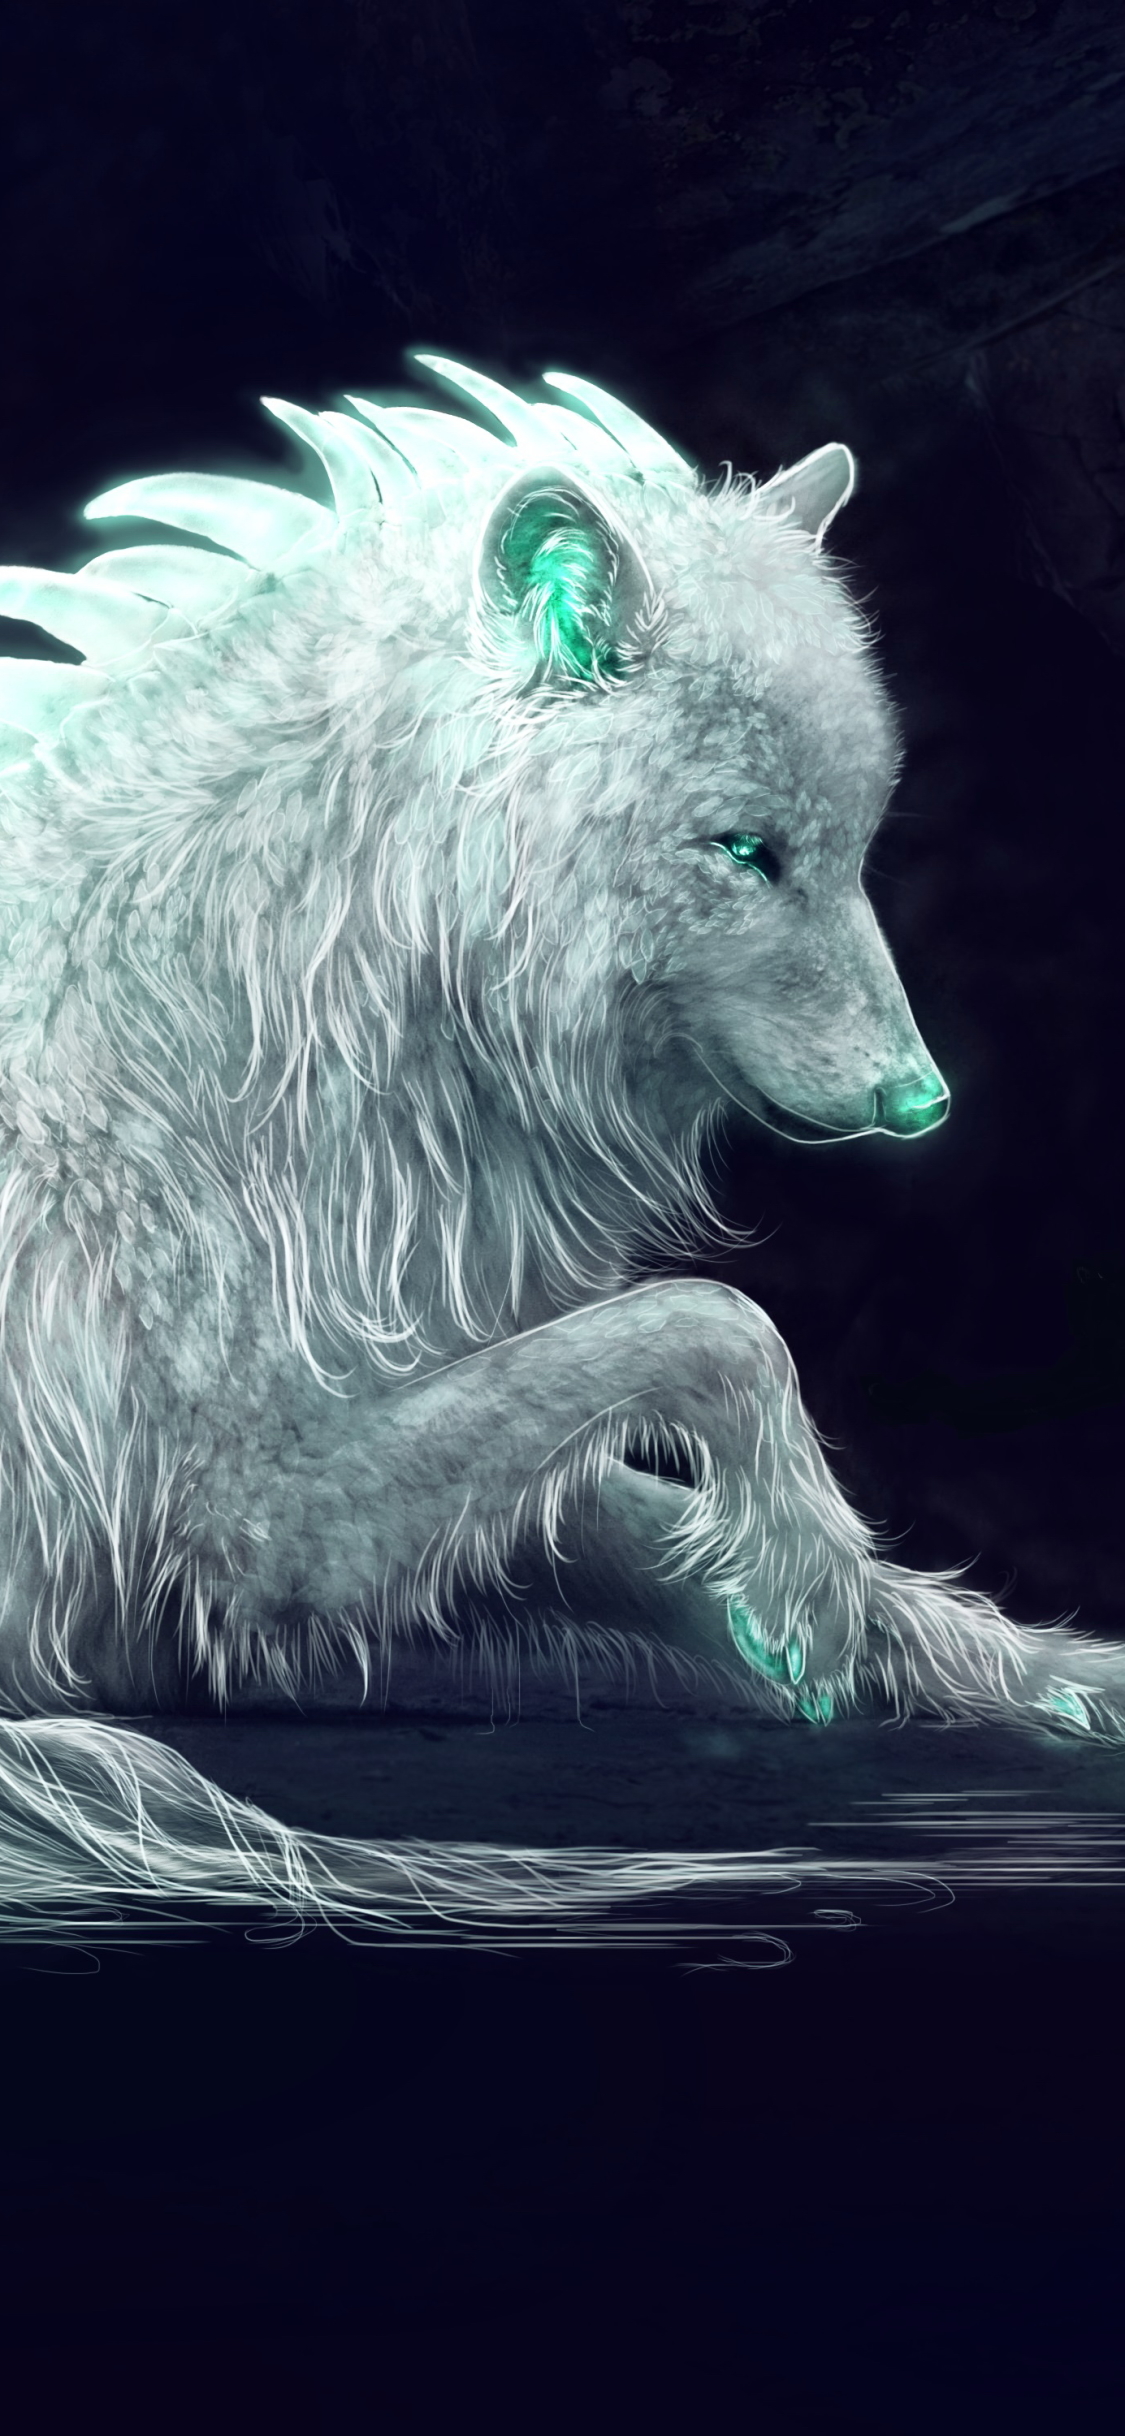 Whitewolf by Amphispiza